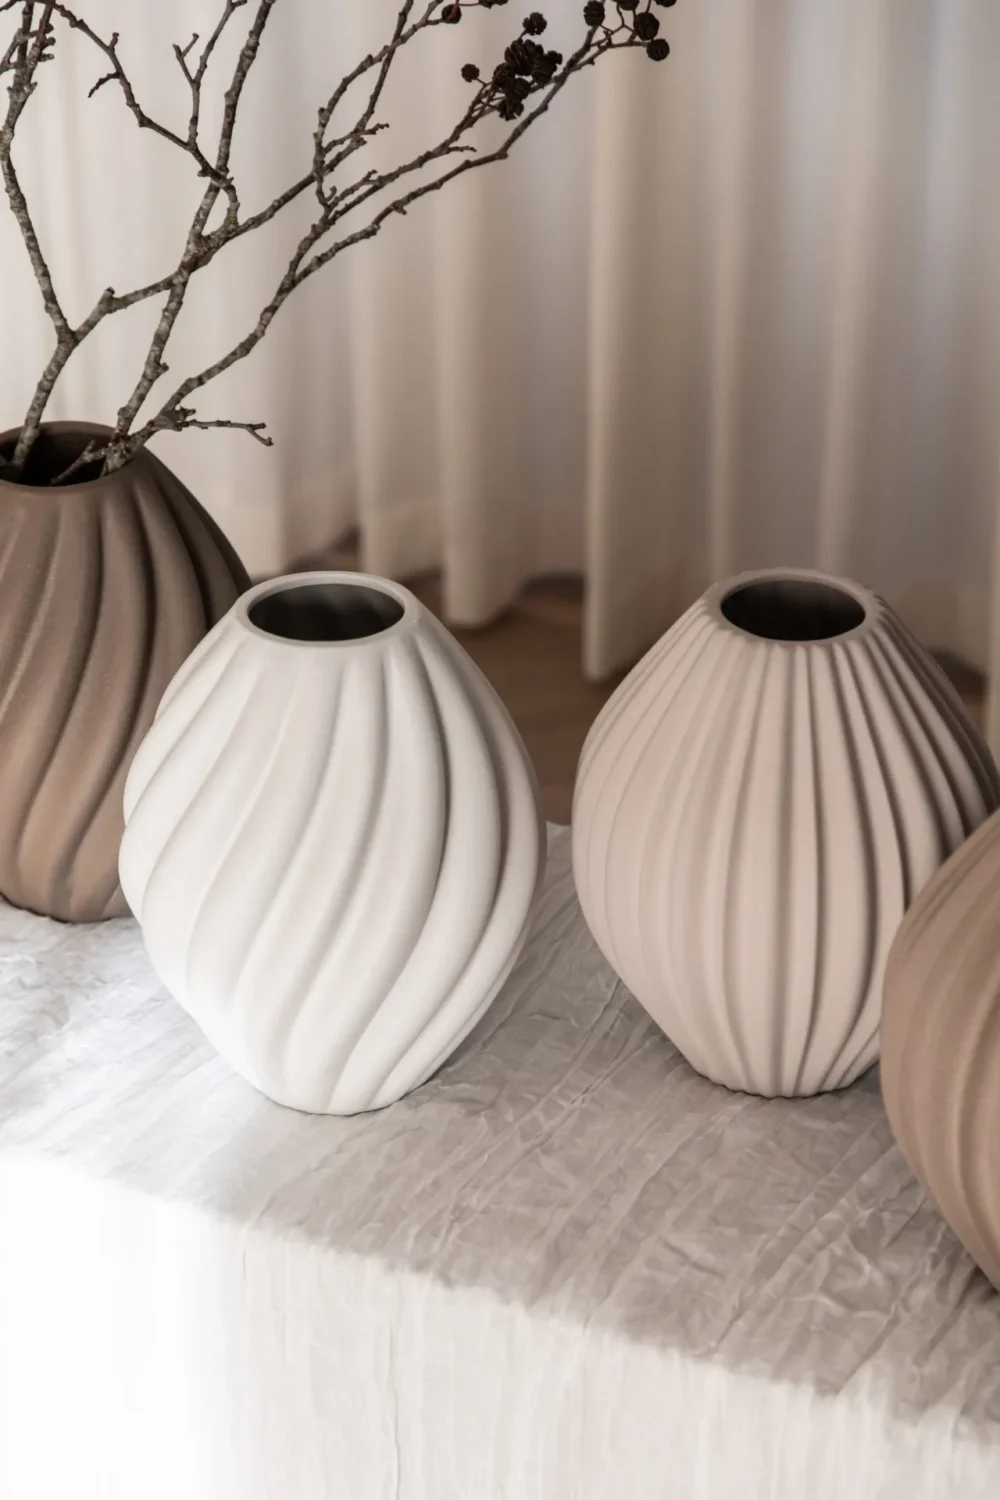 specktrum keramik vase, luna, sandfarvet vase, lysebrun vase, borddækning, bolig interiør, dansk design